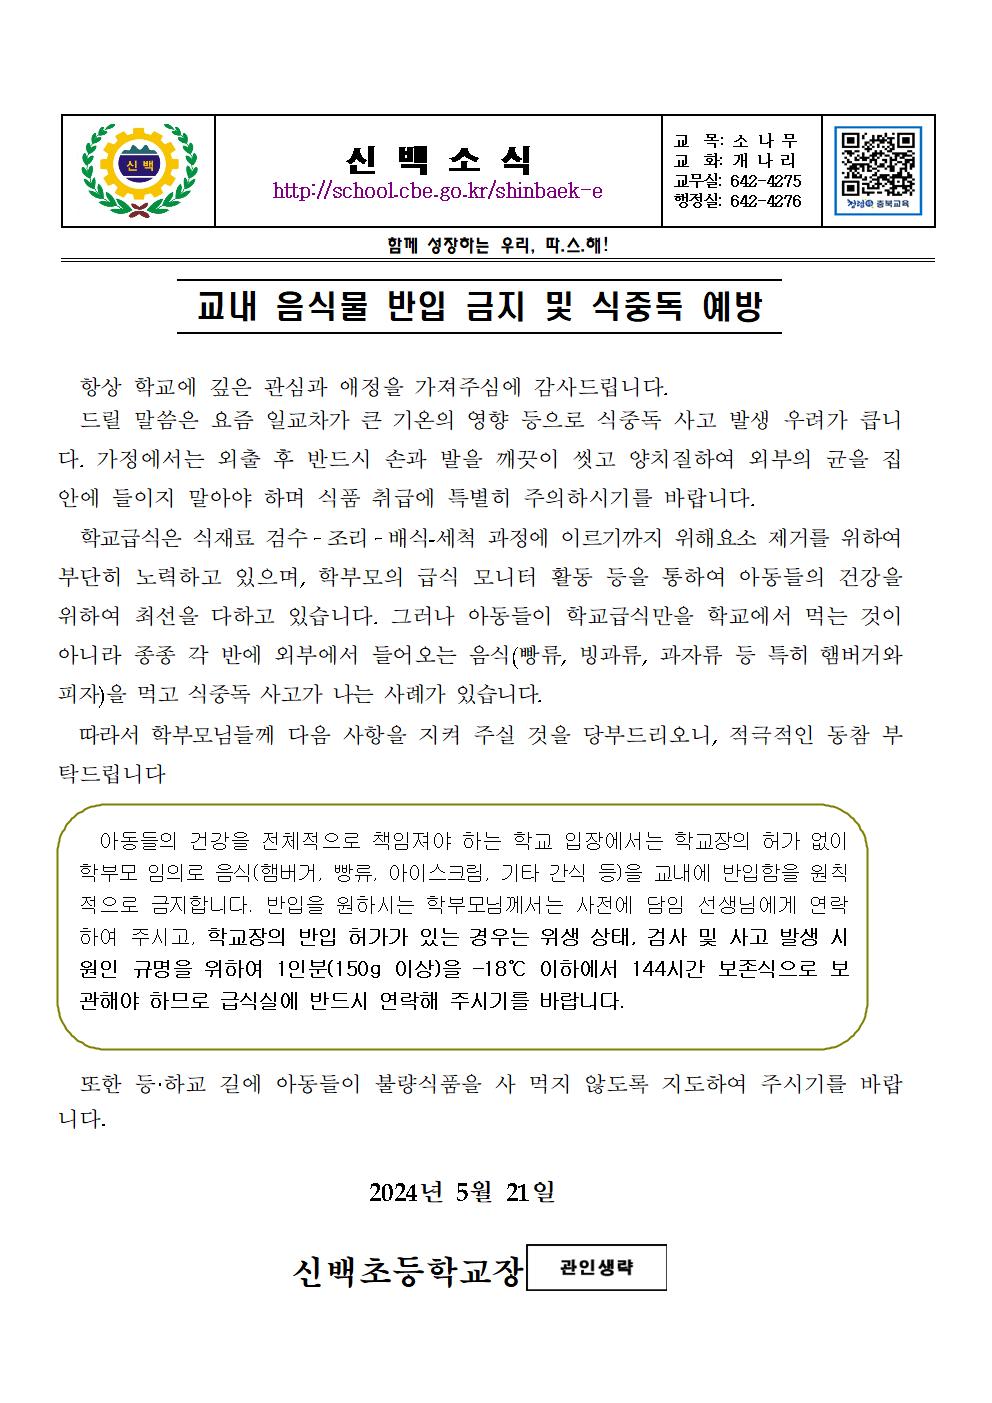 2024 신백음식물반입금지안내문 외(최종)002